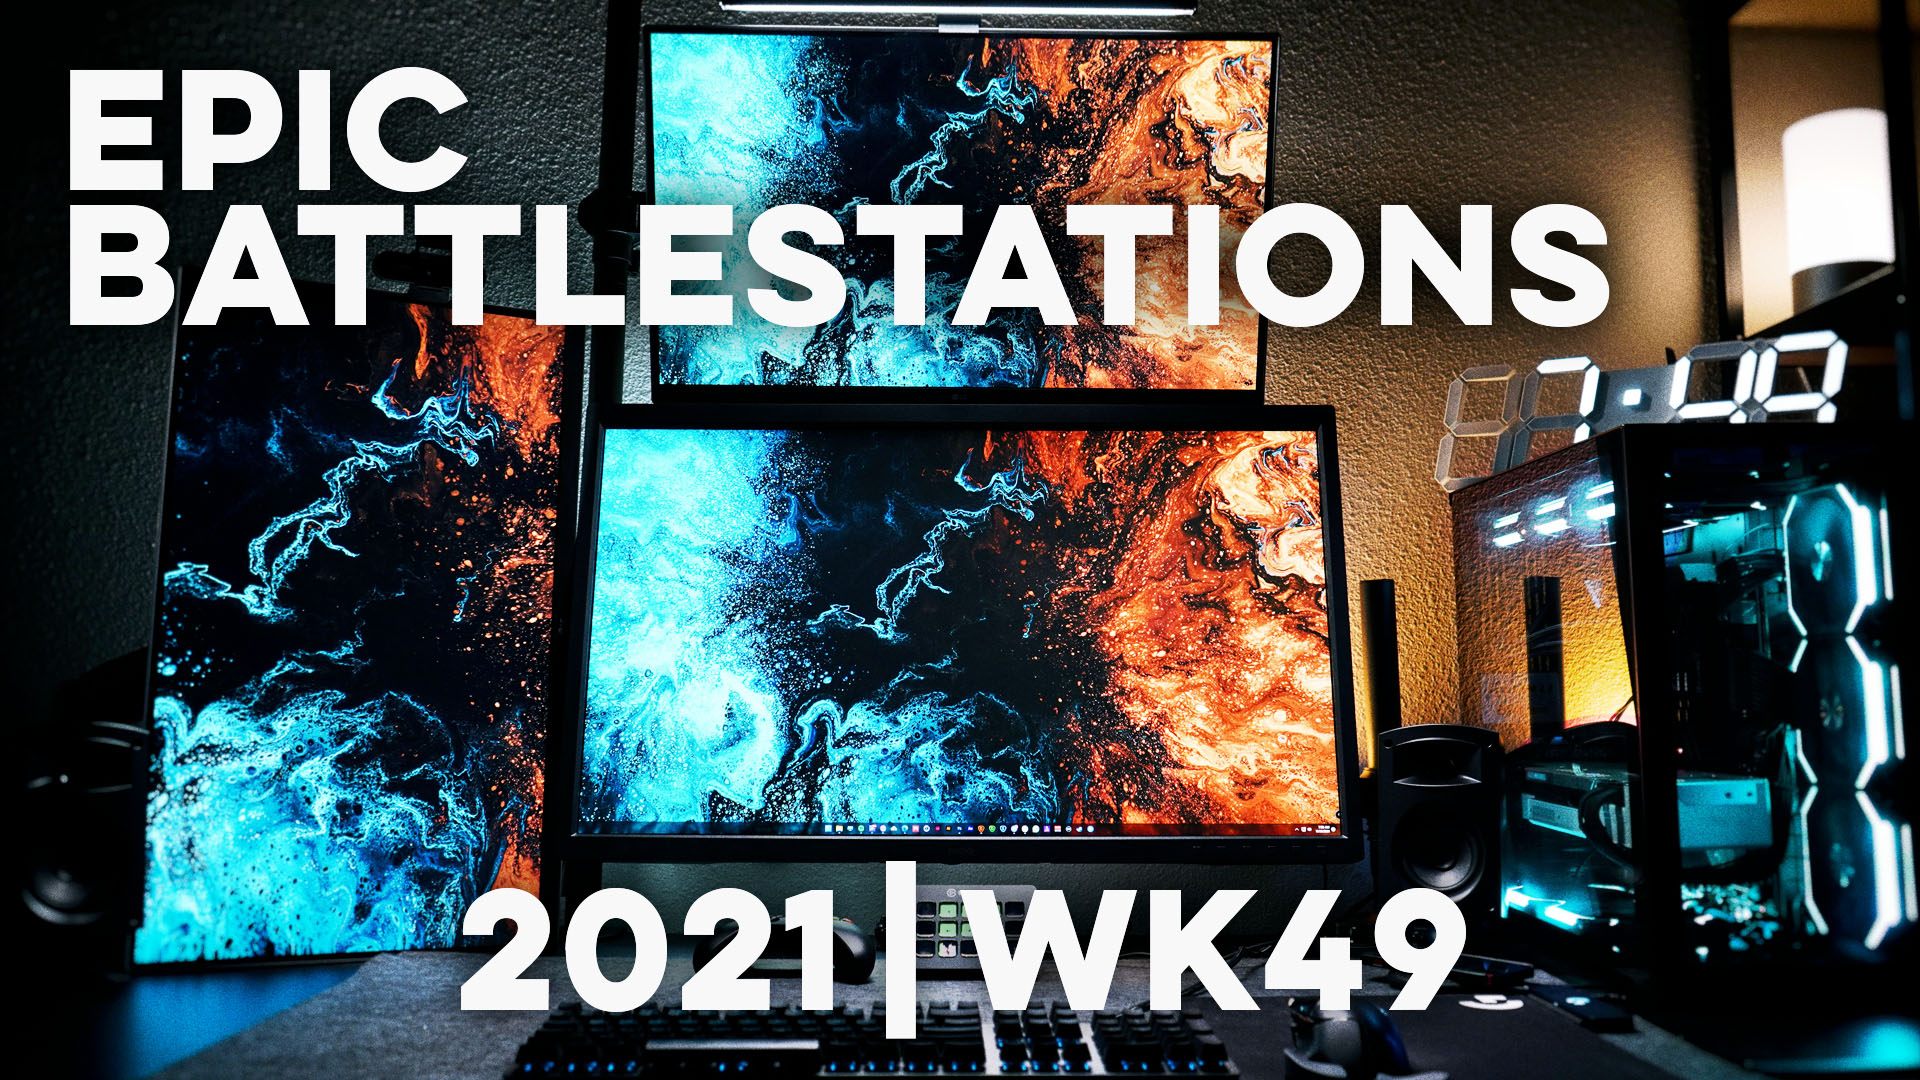 Top 10 EPIC Battlestations for 2021 Week 49!